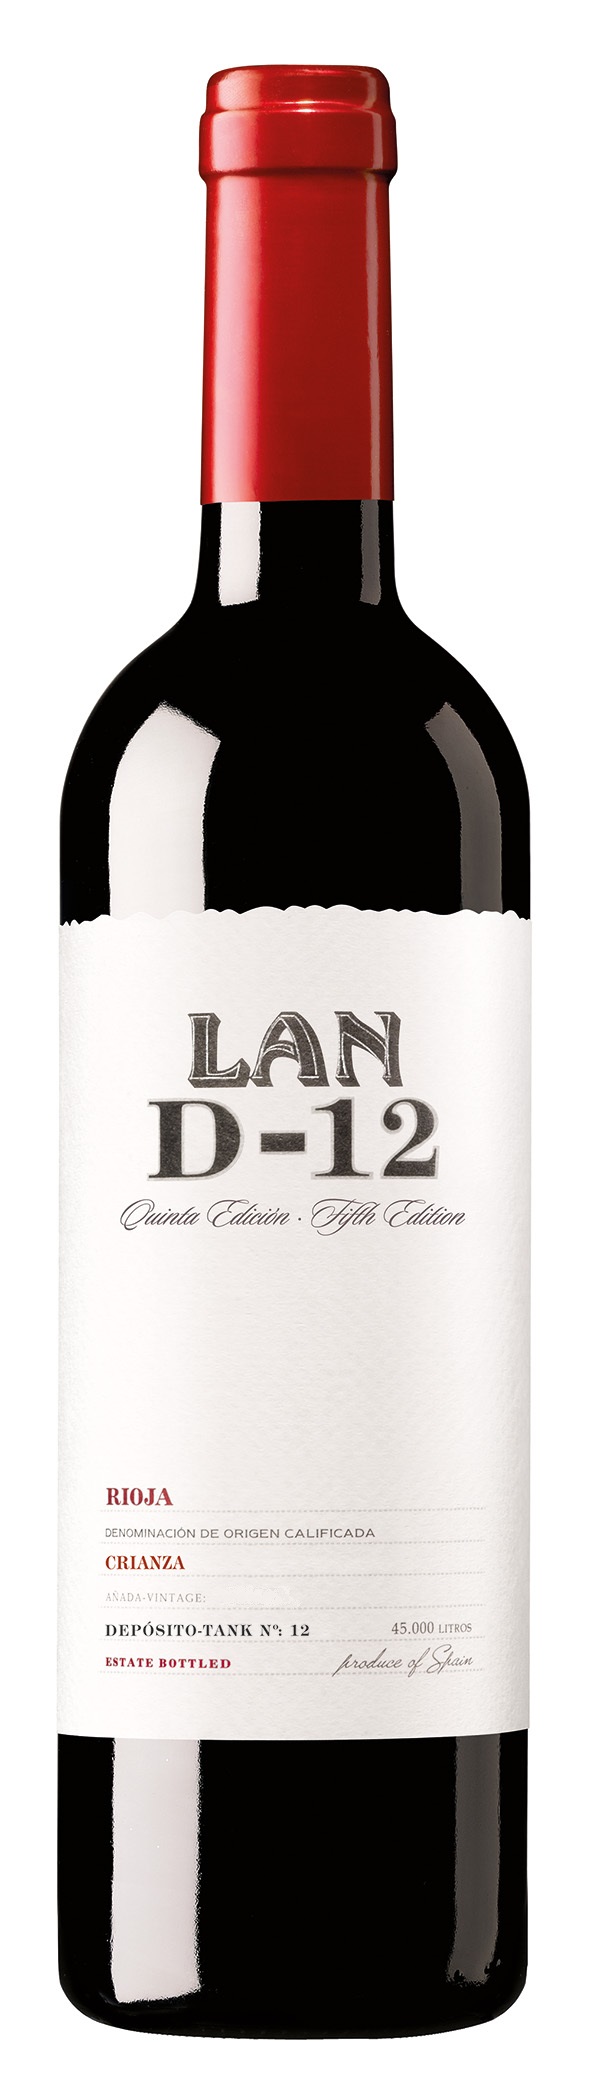 Imagen de la botella de Vino Lan D-12